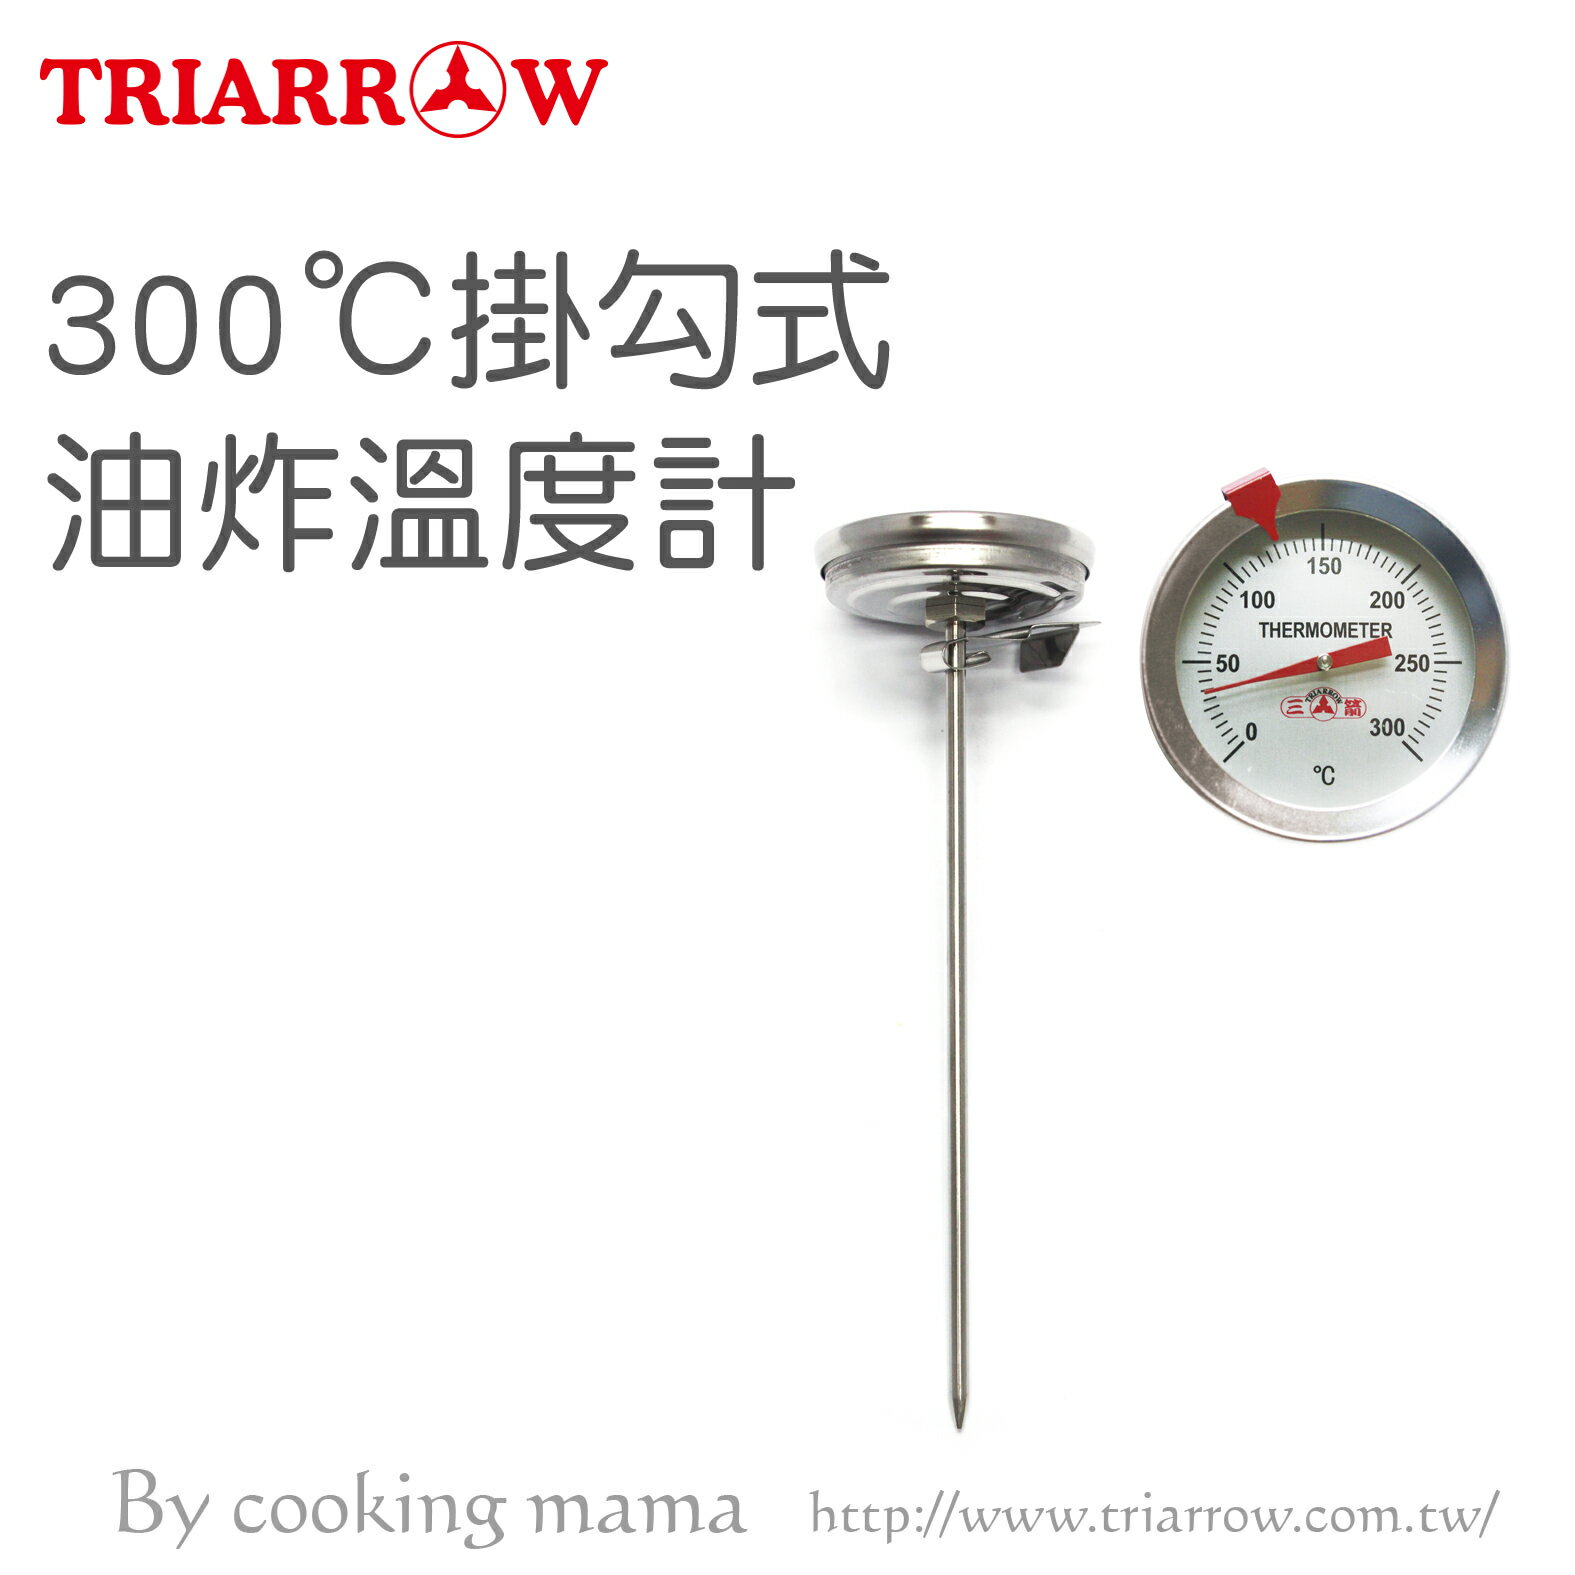 三箭牌掛勾式油炸溫度計300℃(WG-T6)烘焙 料理 油溫 麵團 咖啡 溫度針測溫 營業用 食品溫度計(依凡卡百貨)